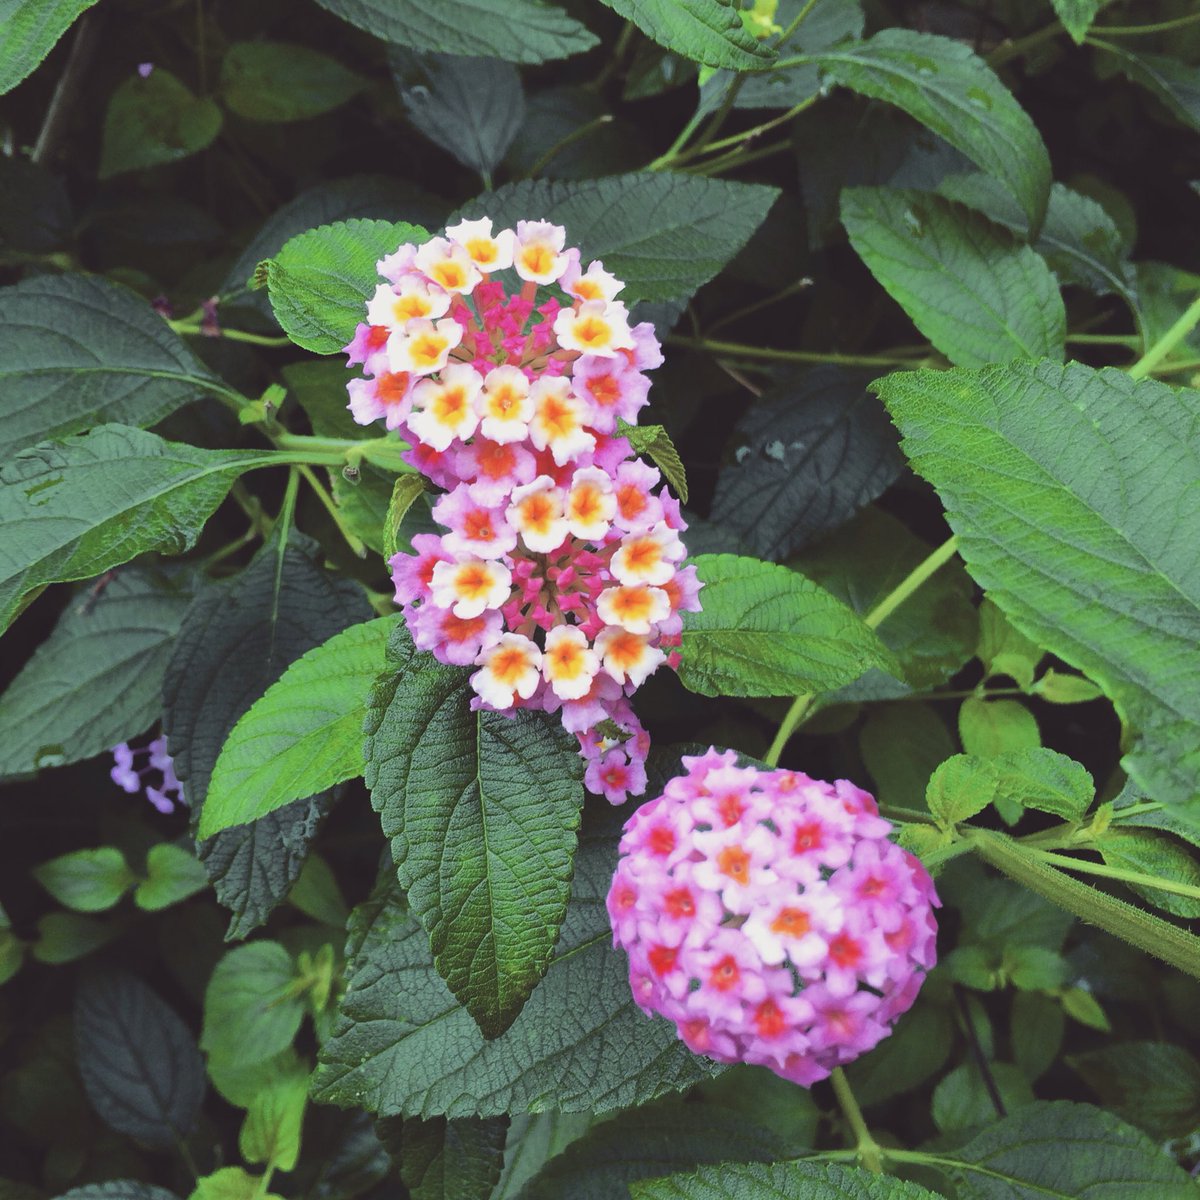 林 幸治 トライセラトップス この小さい紫陽花みたいな花かわいい ランタナっていうのかな